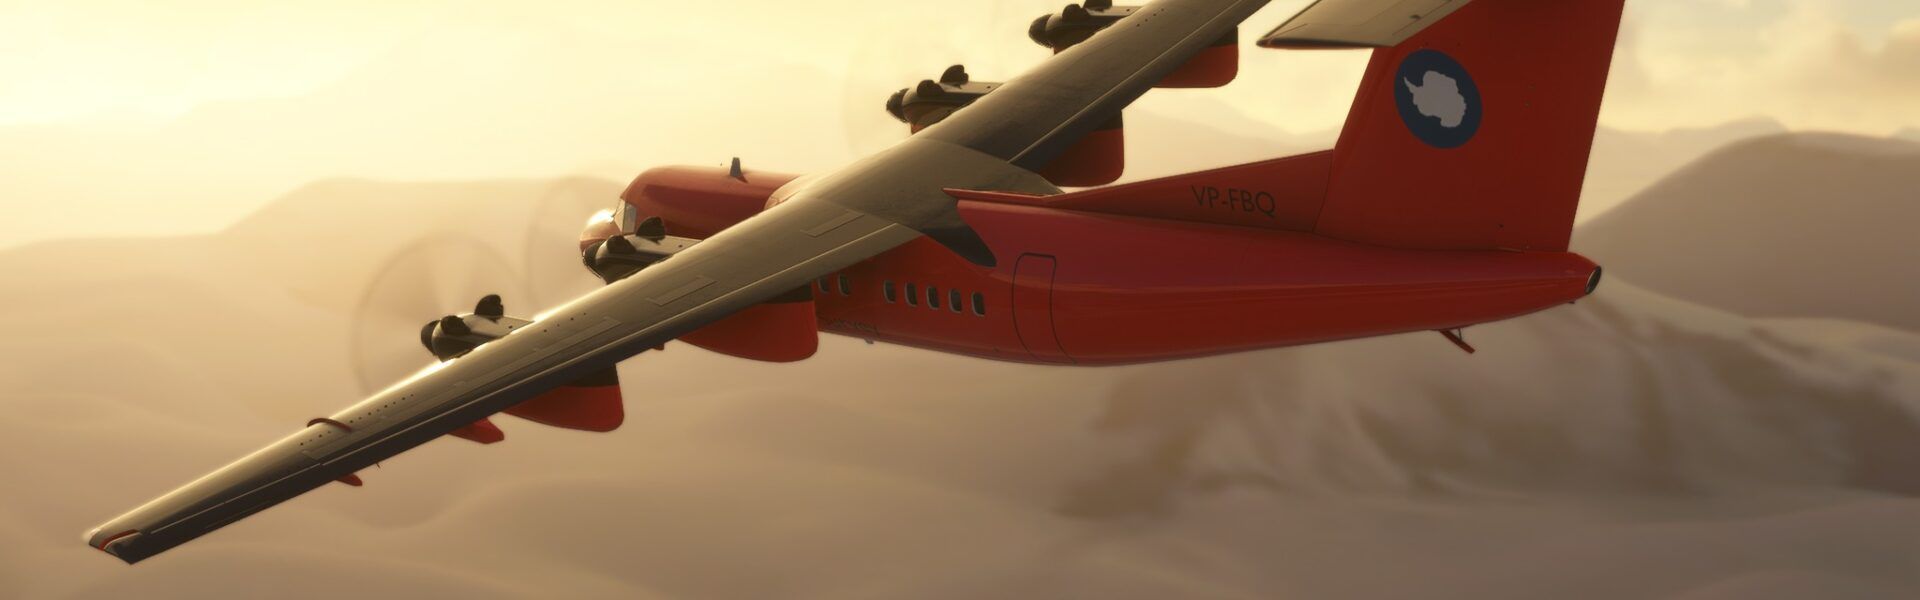 SimWorks Studios Zapowiedź Dash 7 dla Microsoft Flight Simulator